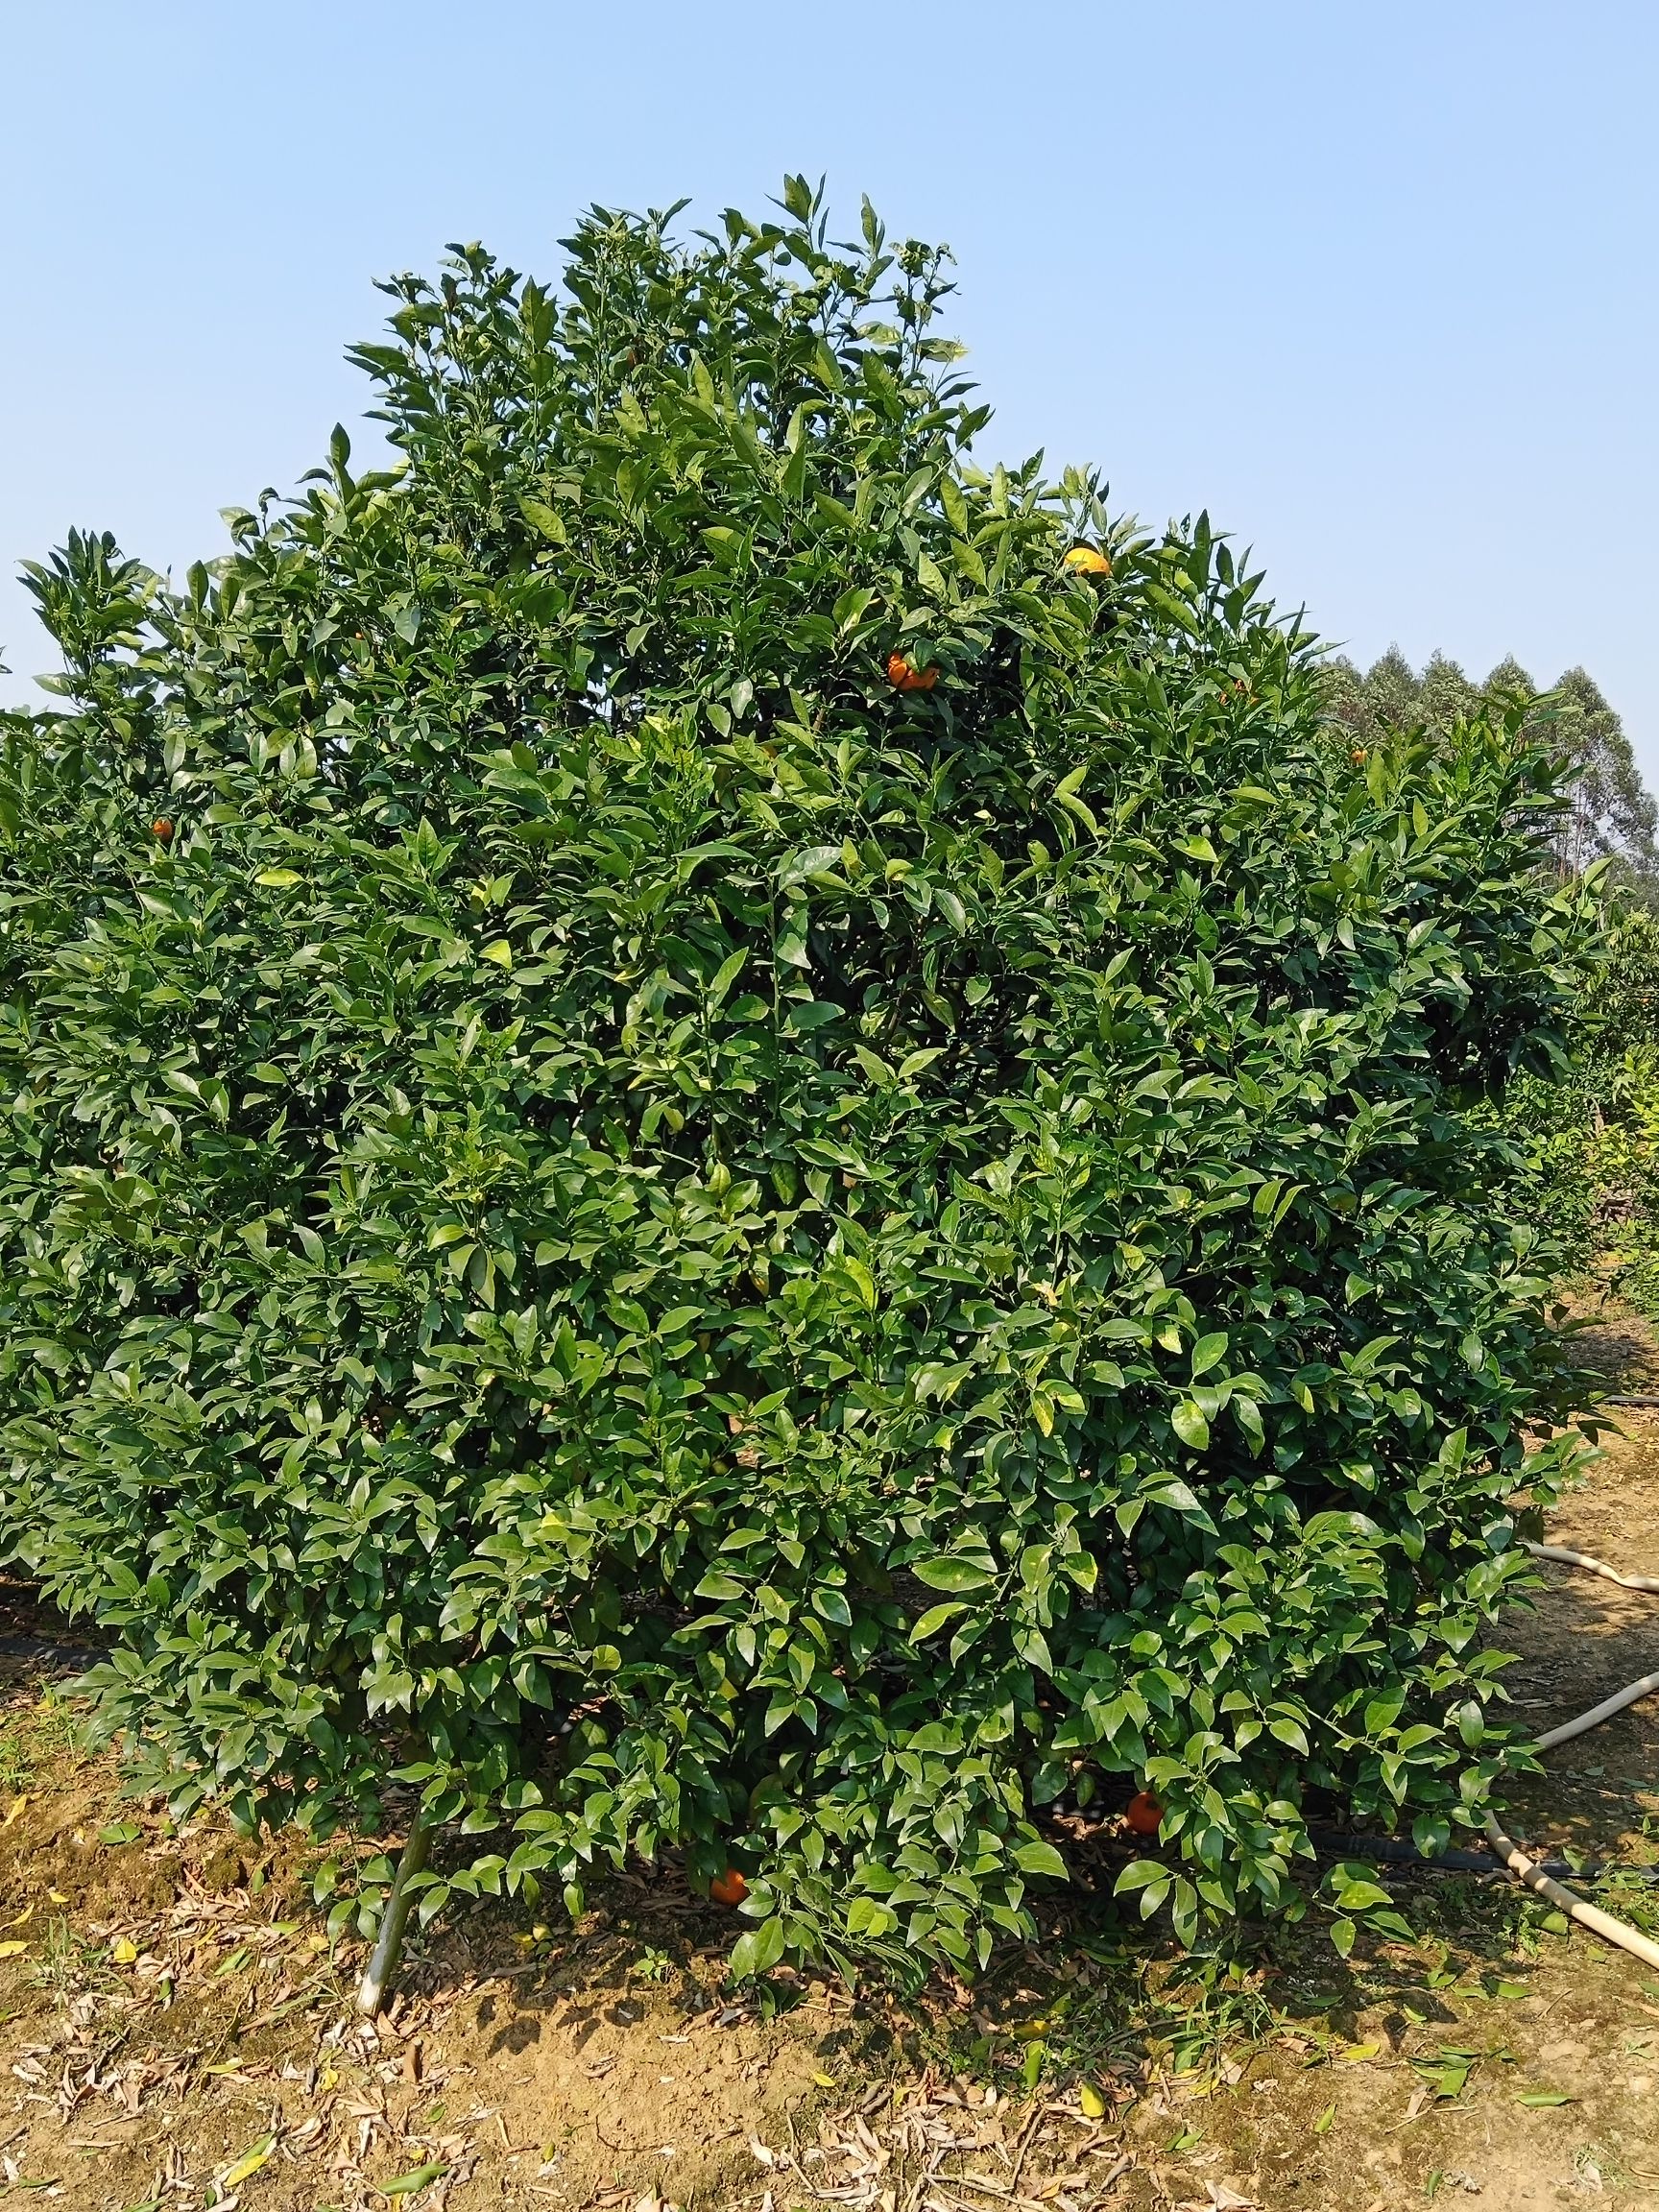 沃柑苗 5年桔子树,枝条密集,量大,价格便宜